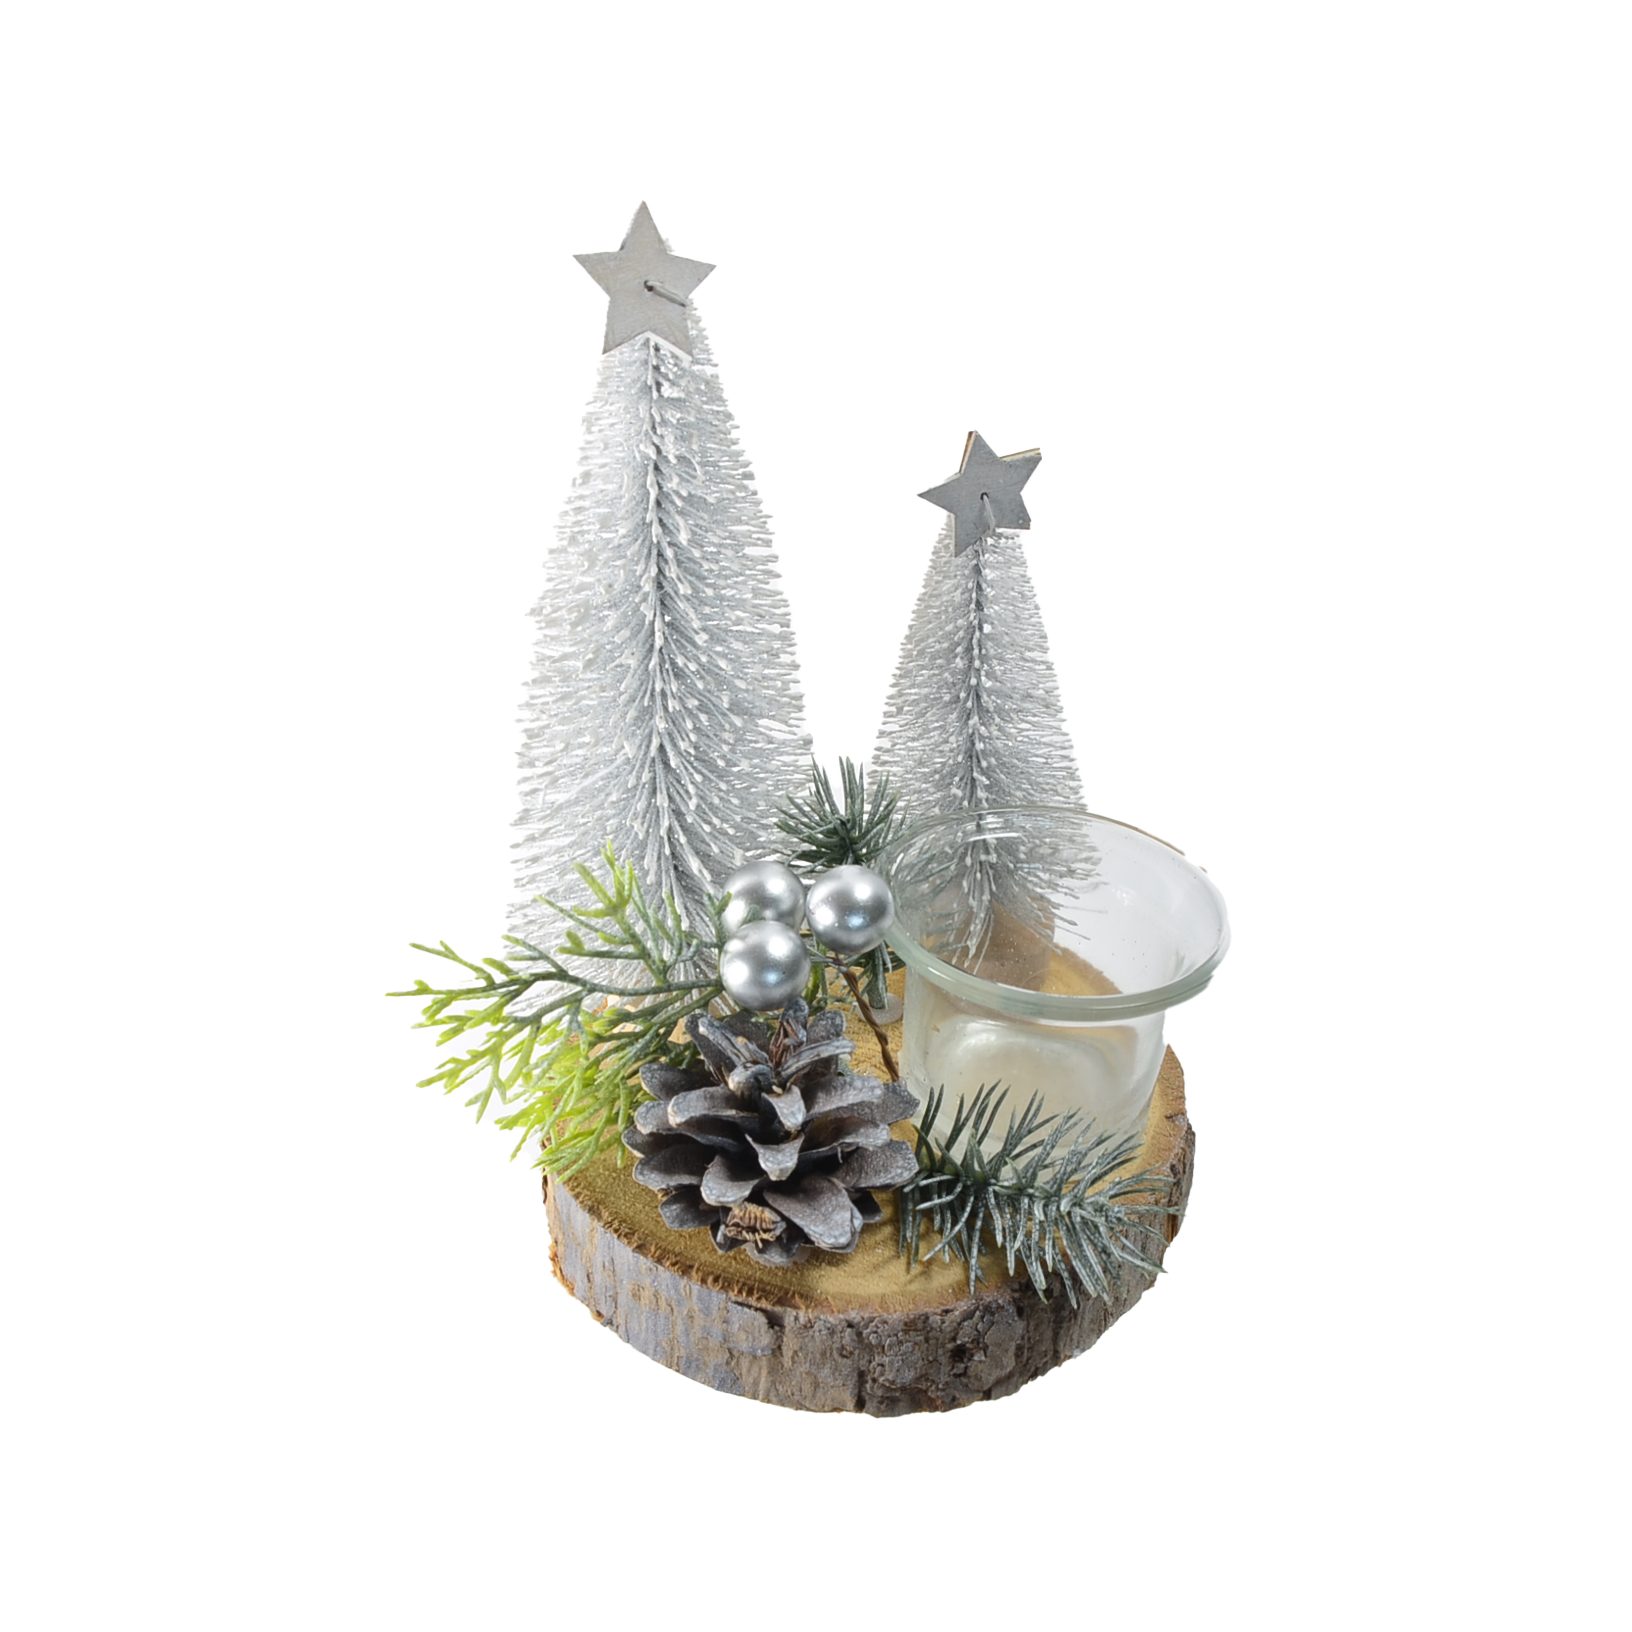 B&S Teelichthalter Weihnachts Teelichtglas auf Holzplatte Ø14 cm Tischdeko in Silbertönen